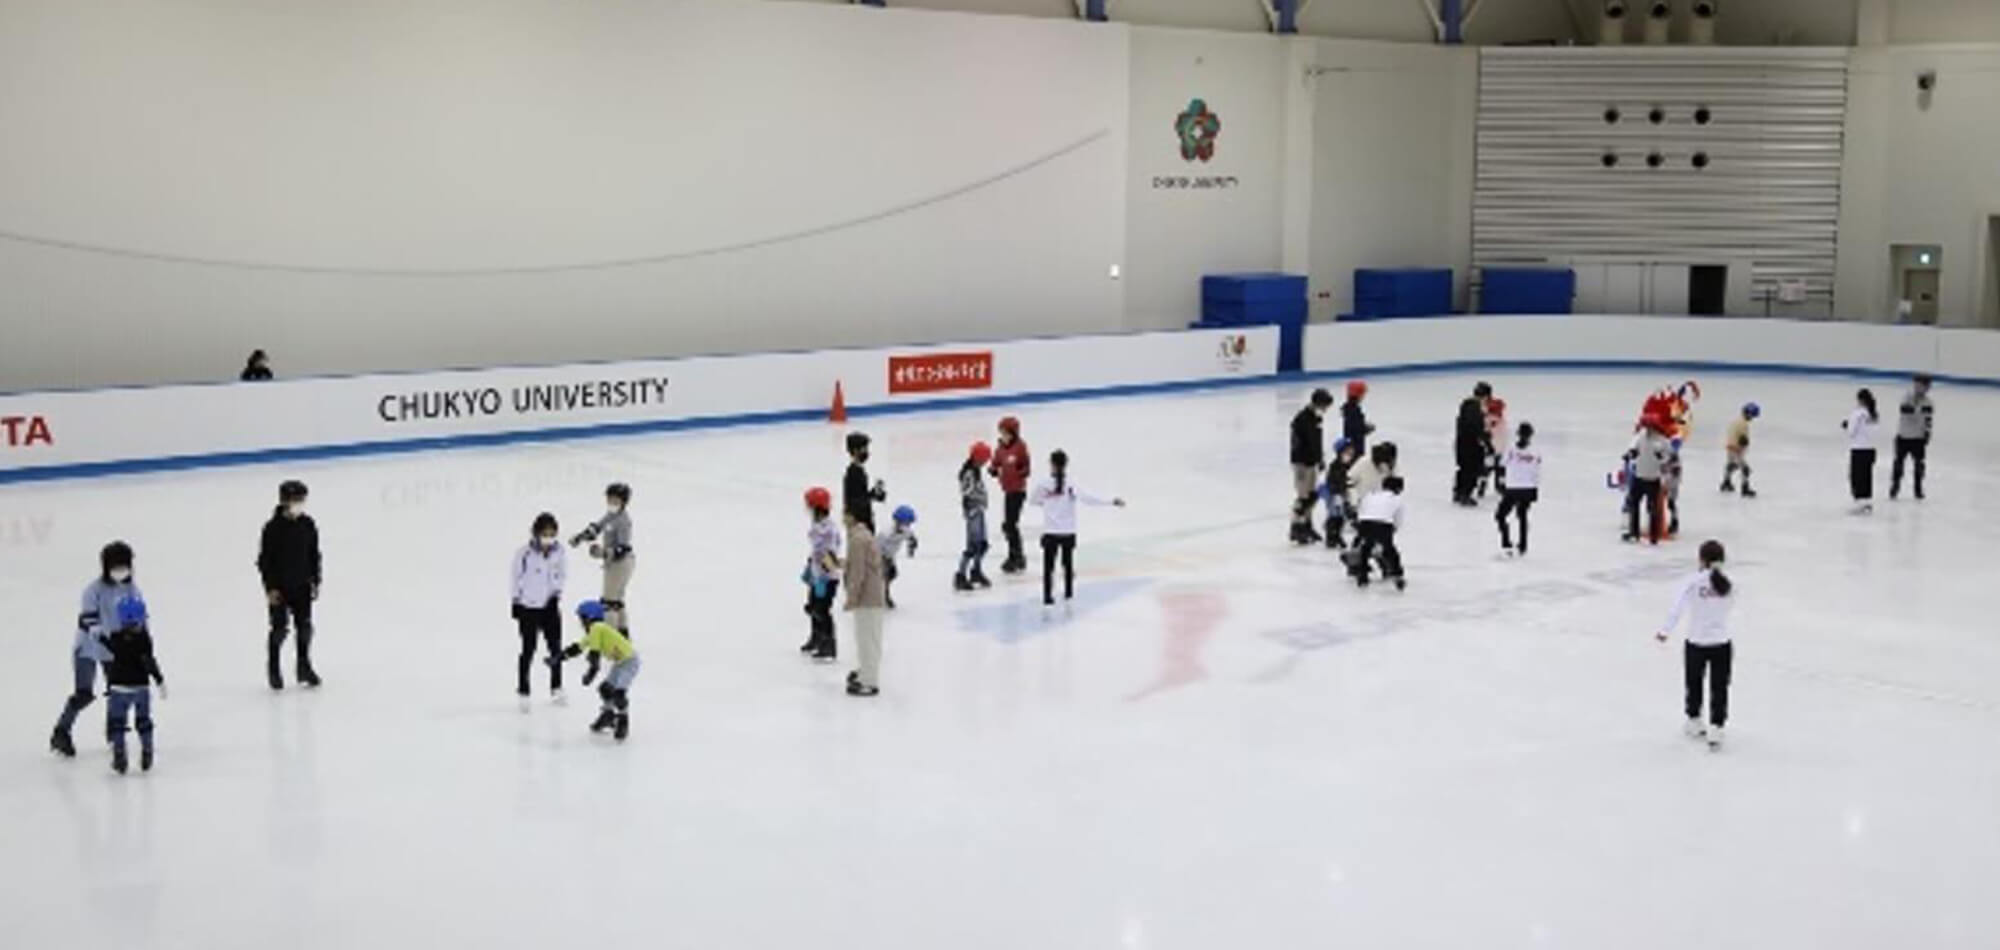 名鉄セカンドスクール「親子で滑ろうスケート教室」を開催